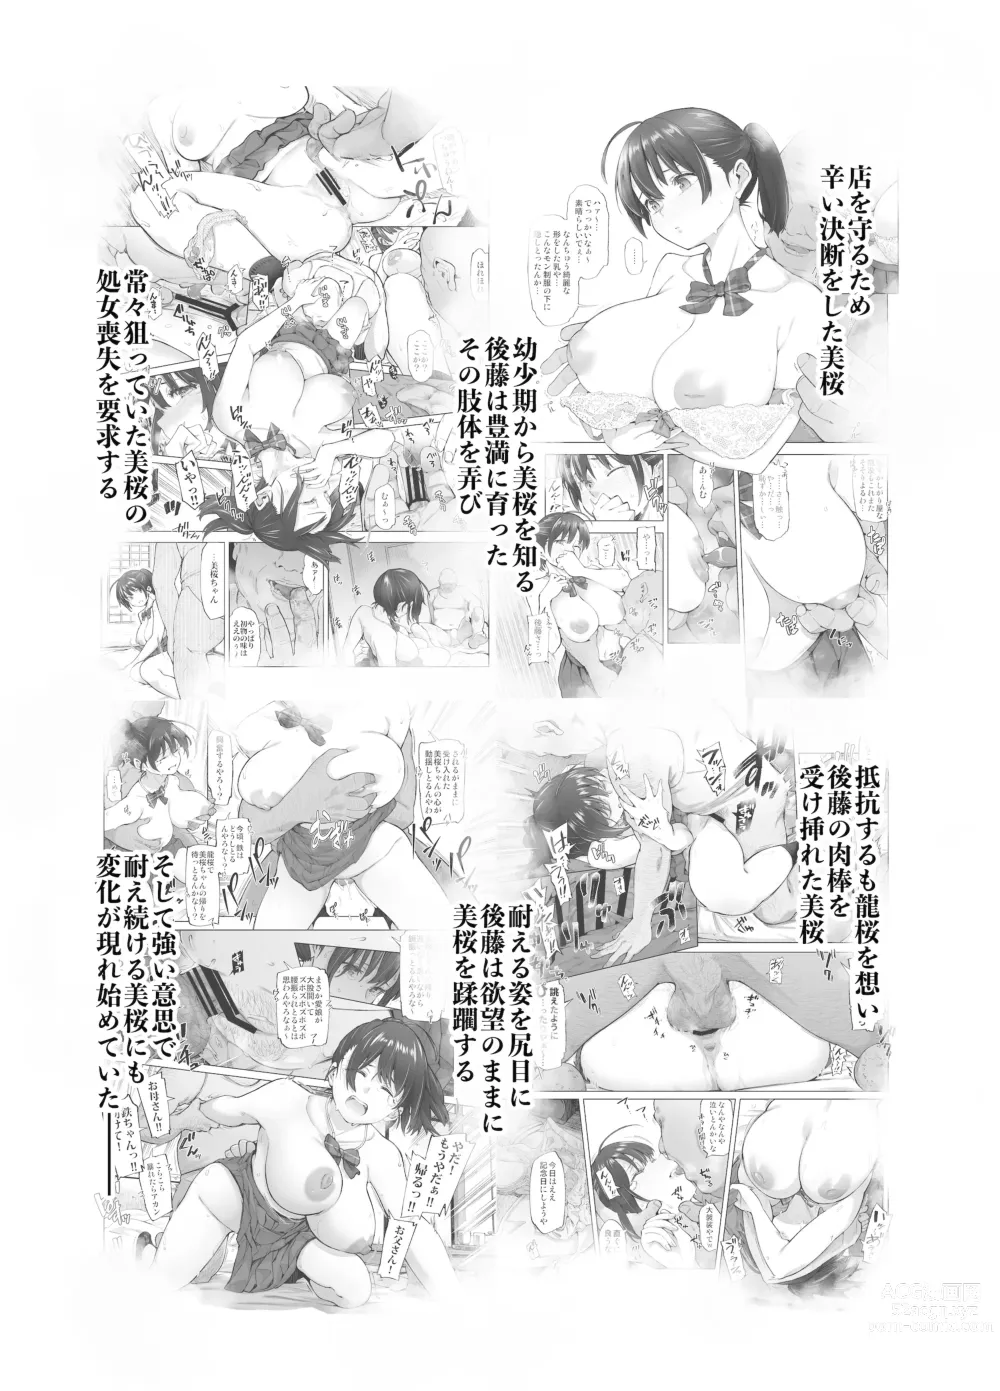 Page 3 of doujinshi Sakura Saku Chiru Hanabira Tsubomi Hokorobibu ~Ossan no Nikutsubo e to Ochi Hateta Saiai no Osananajimi Yoshioka Mio~